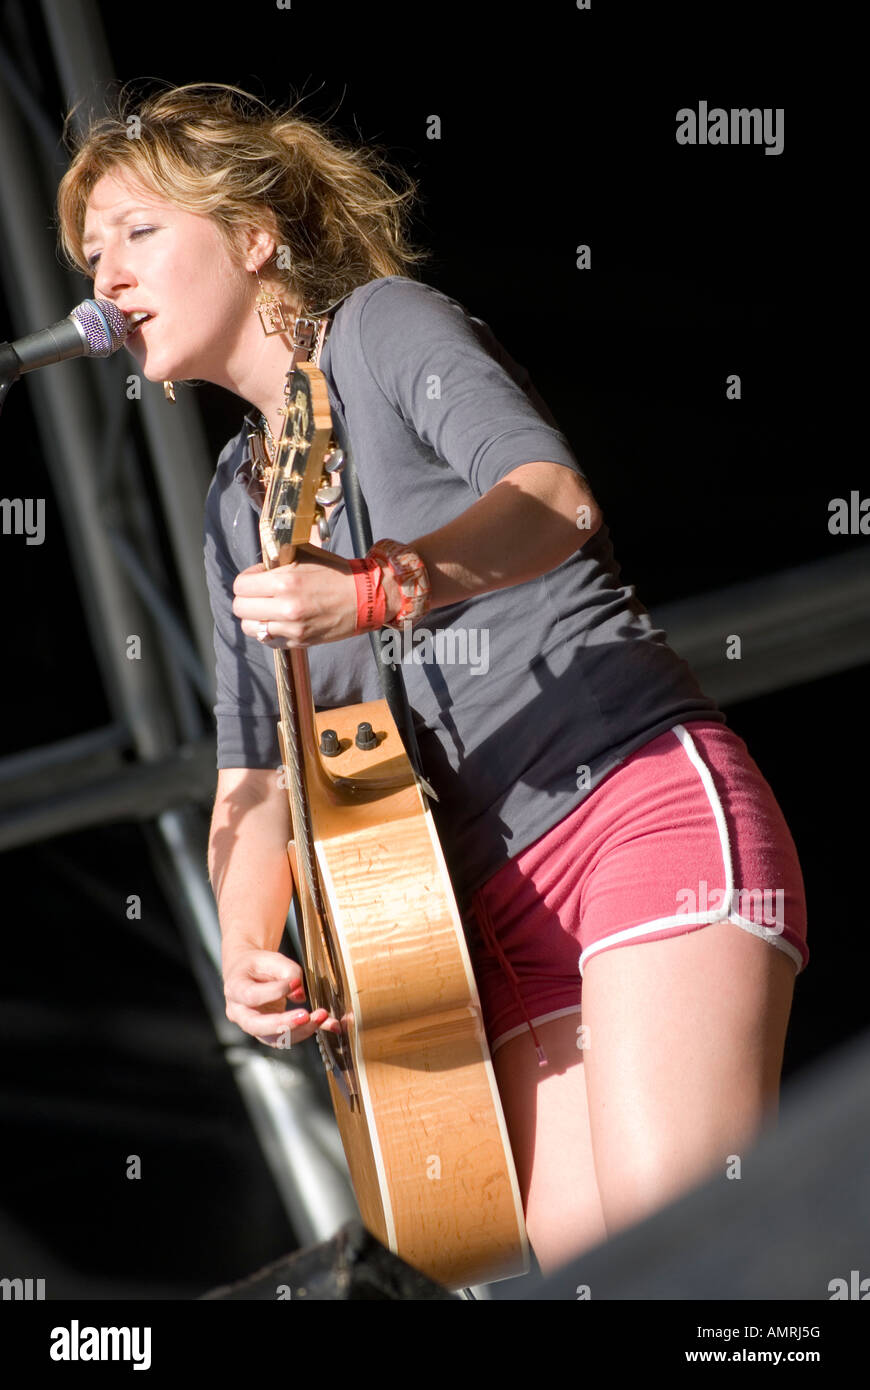 Martha Wainwright sul palco a cantare e suonare la chitarra a Wychwood festival di Cheltenham 2007 Foto Stock